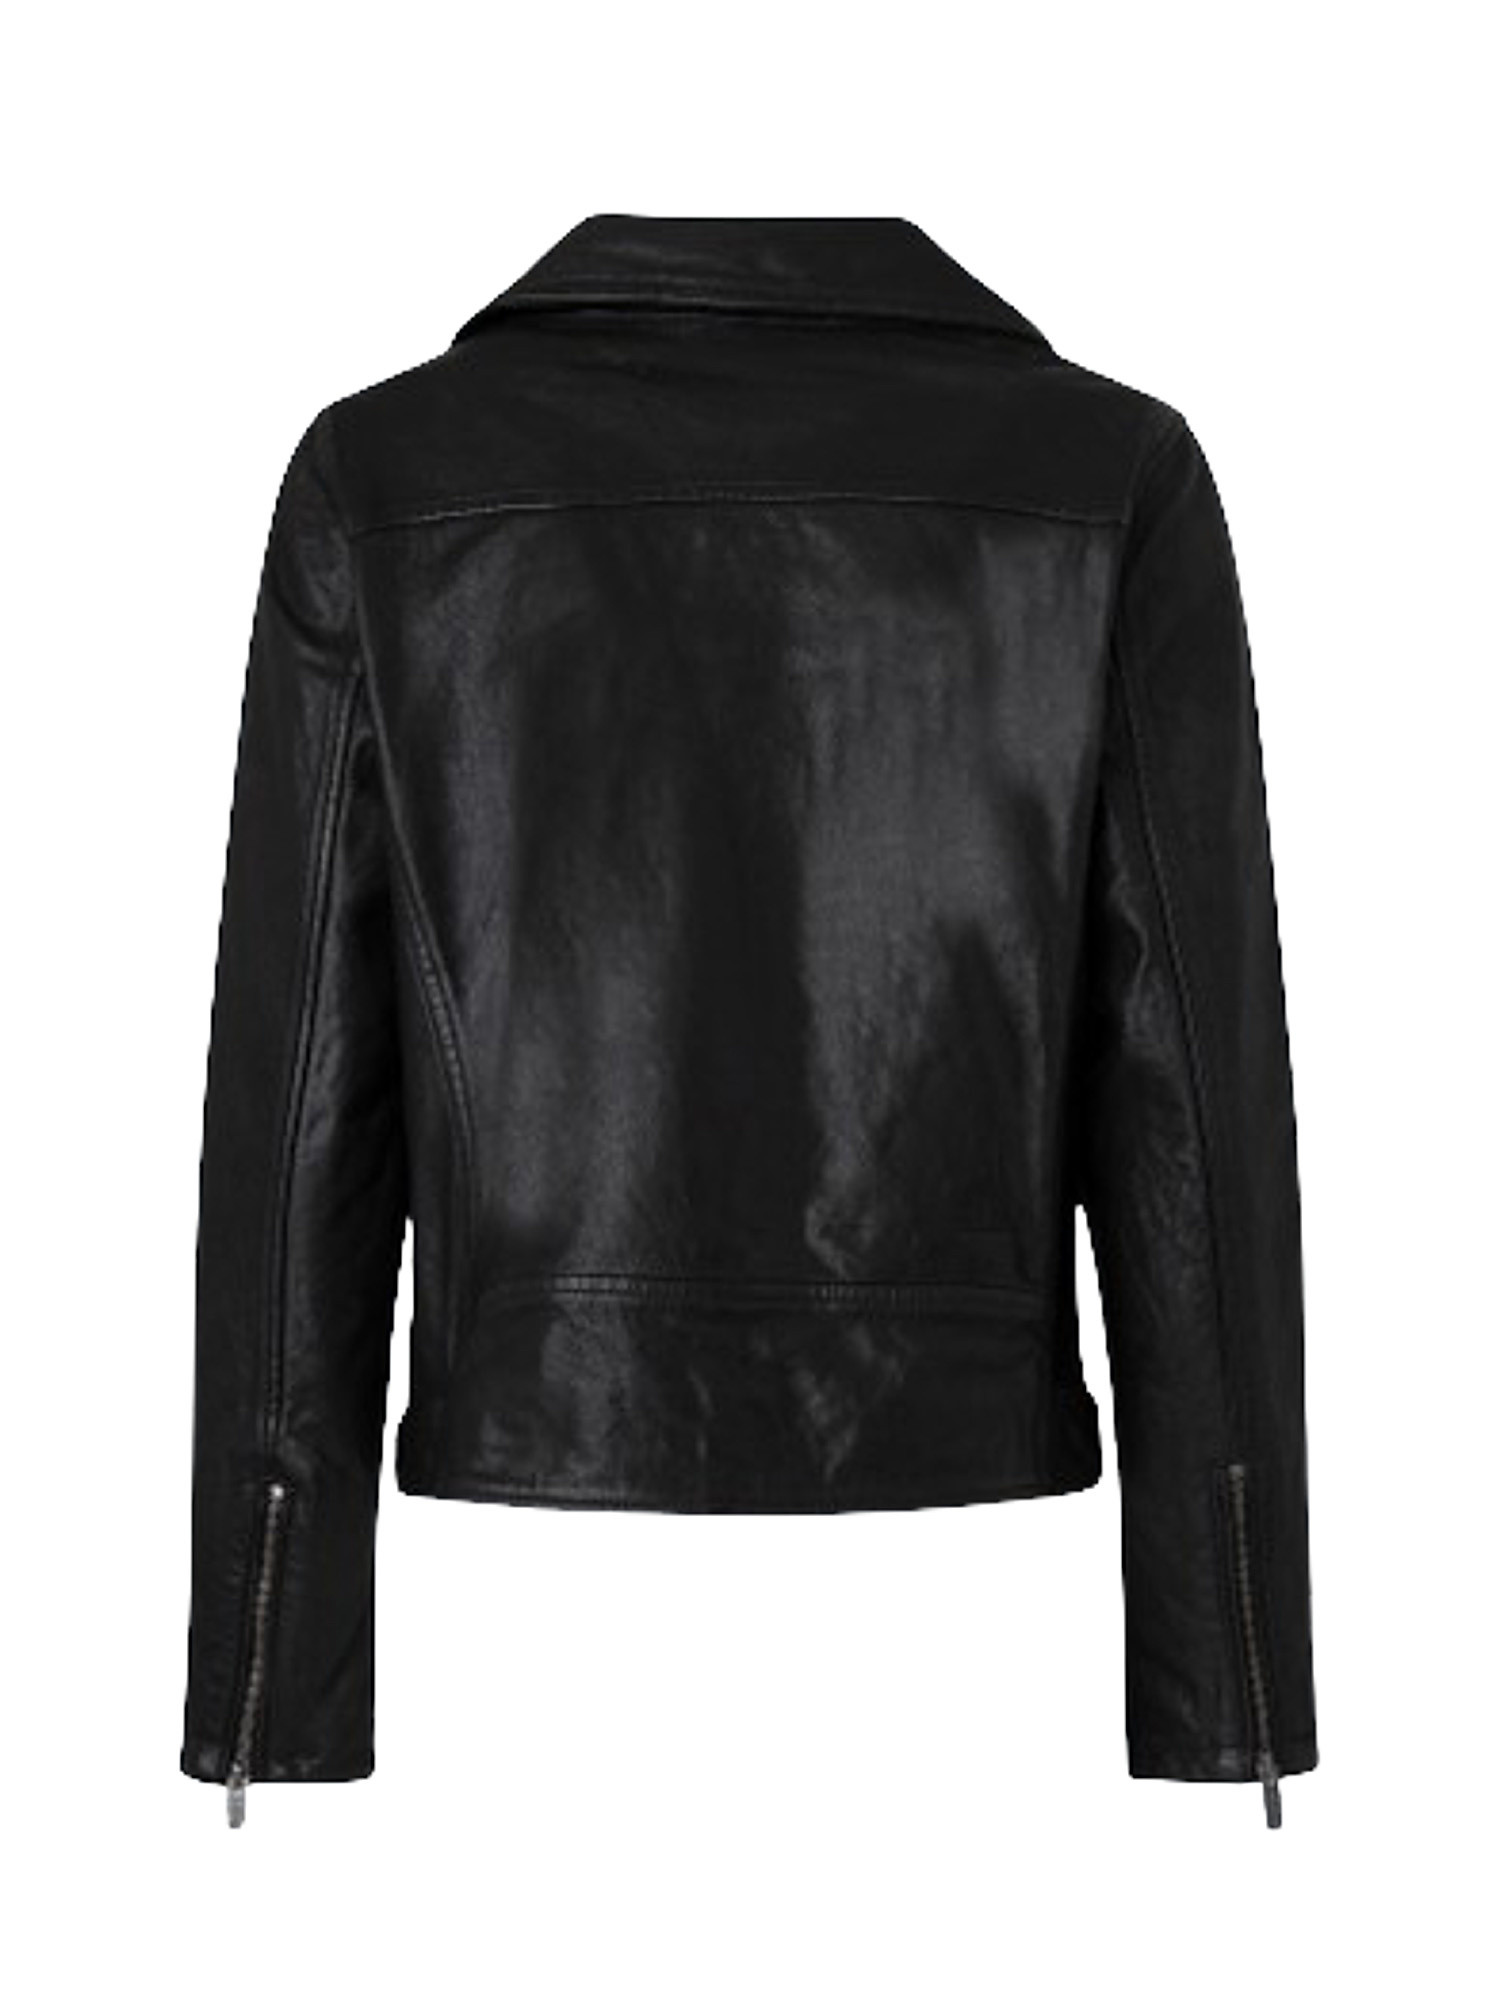 Fify biker leather jacket, Black, large image number 1